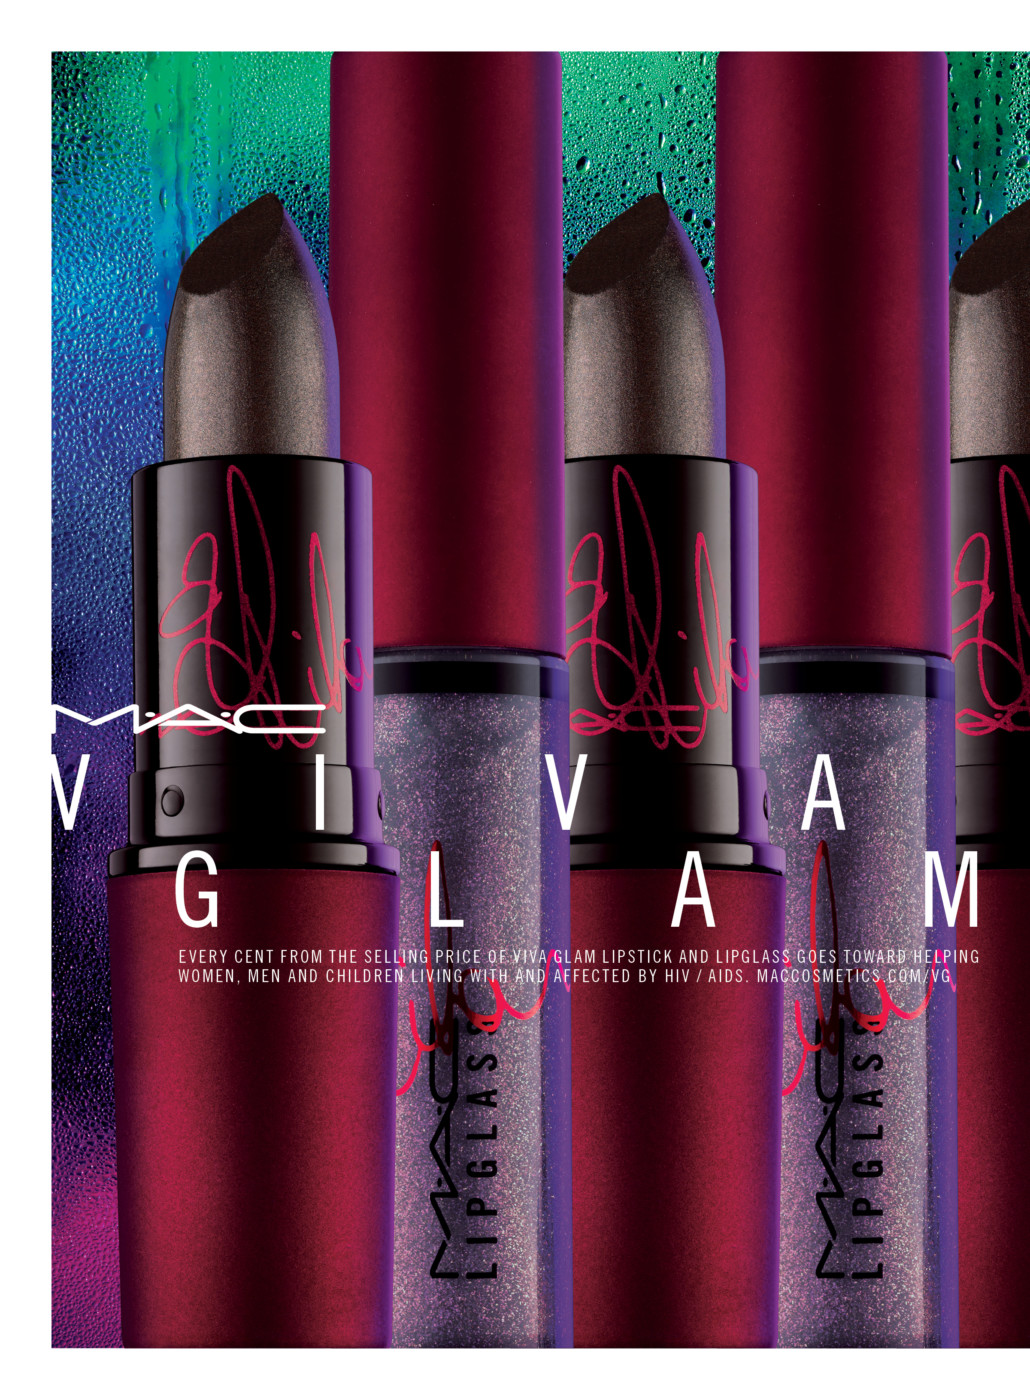 mac viva glam rihanna 2, mac viva glam, rihanna viva glam, mac rihanna, mac rihanna 2014, rihanna lipstick, rihanna lipglass, mac new viva glam, rihanna new viva glam campaign